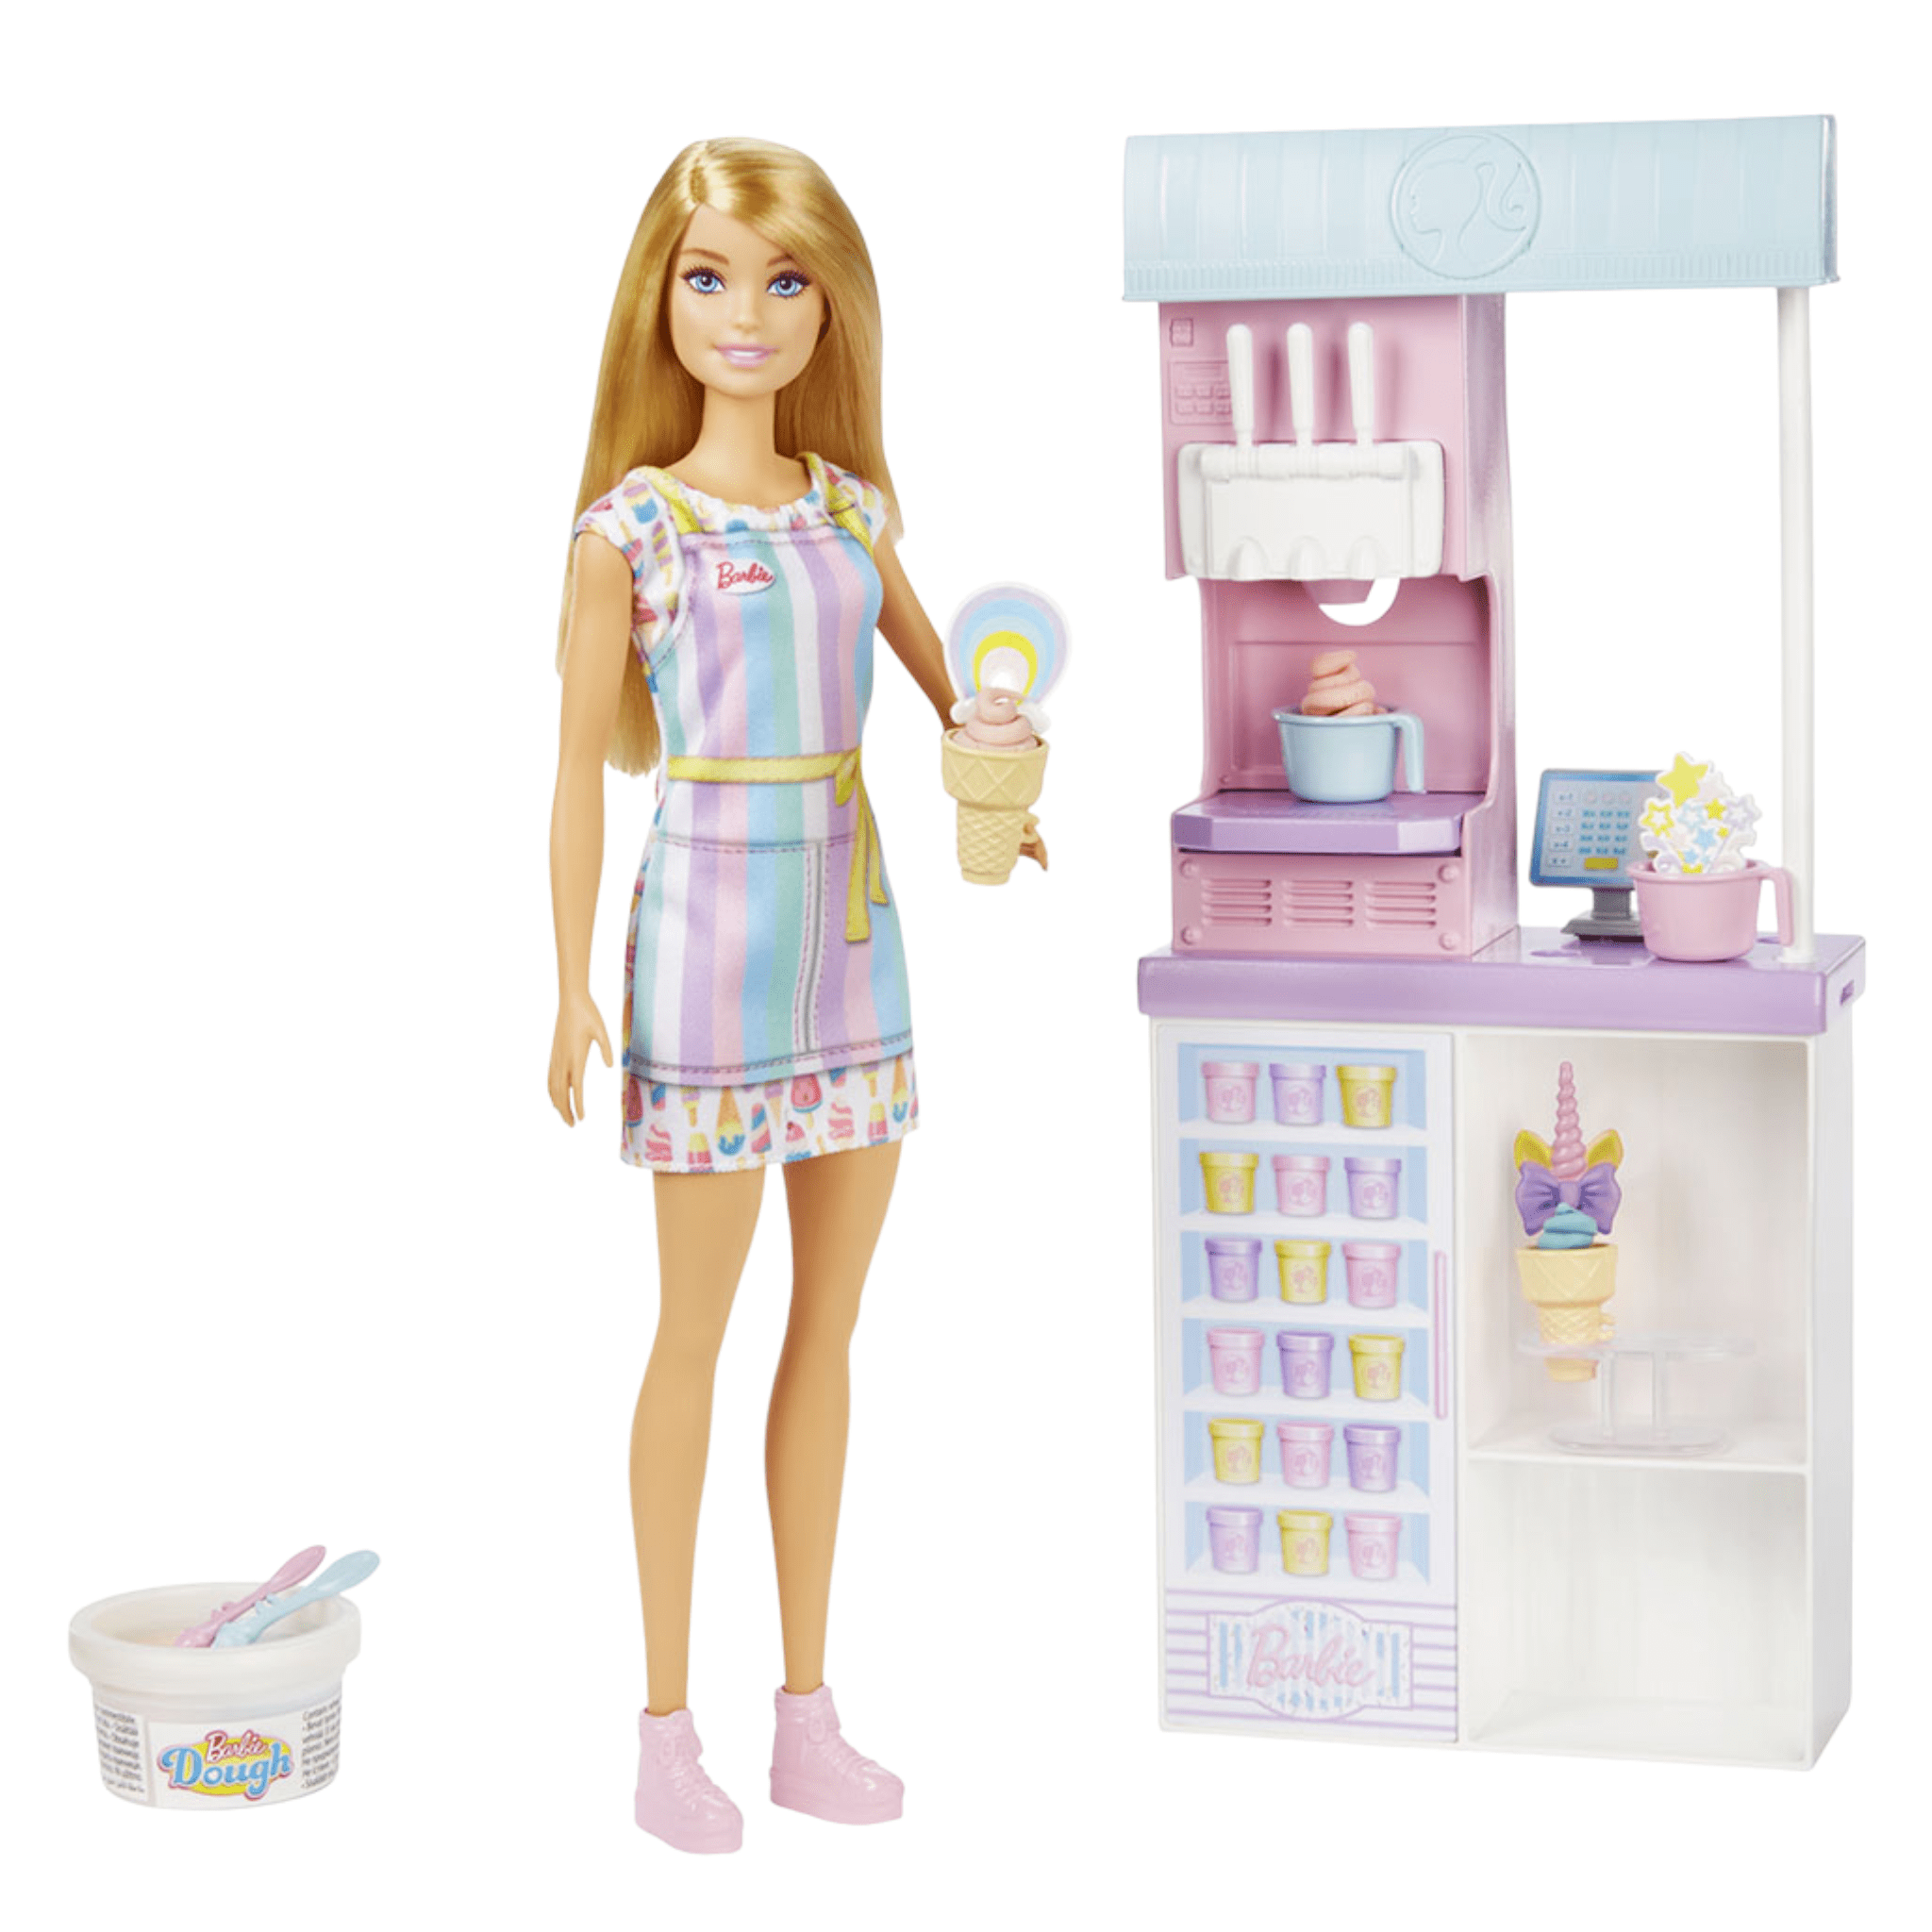 Набор игровой Barbie Ice Cream Shopkeeper Playset игровой набор barbie коллекция одежды 2 наряда